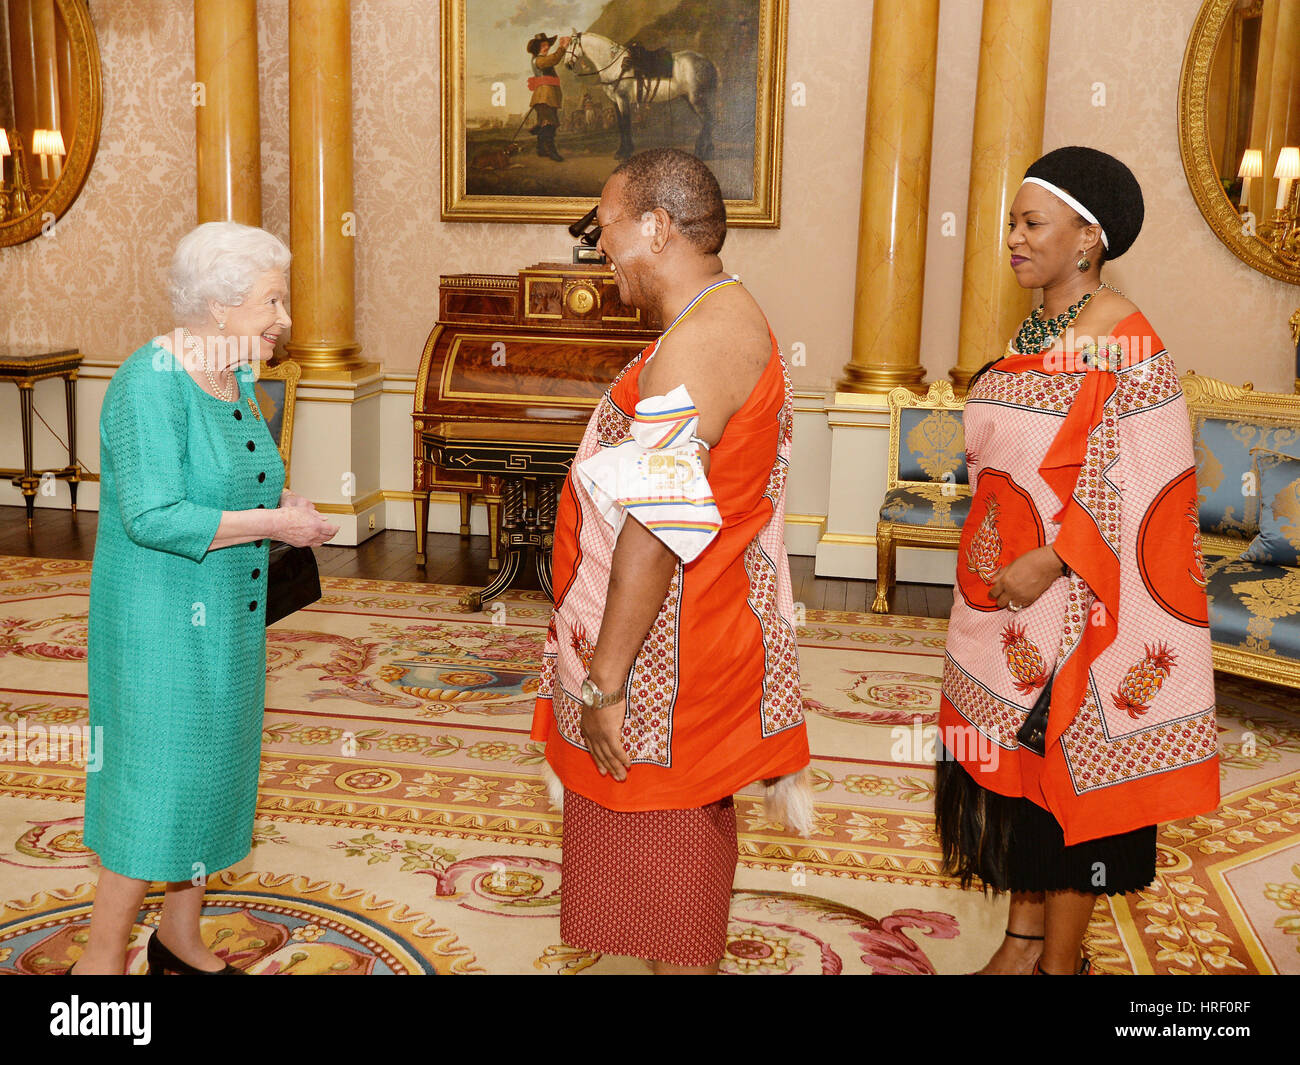 La reine Elizabeth II est entretenu avec Son Excellence monsieur Christian Muzie Nkambule le Haut Commissaire du Swaziland, après qu'il a présenté ses lettres de créance et était accompagné par Mme Nkambule, lors d'une audience privée avec Sa Majesté au palais de Buckingham à Westminster au centre de Londres. Banque D'Images